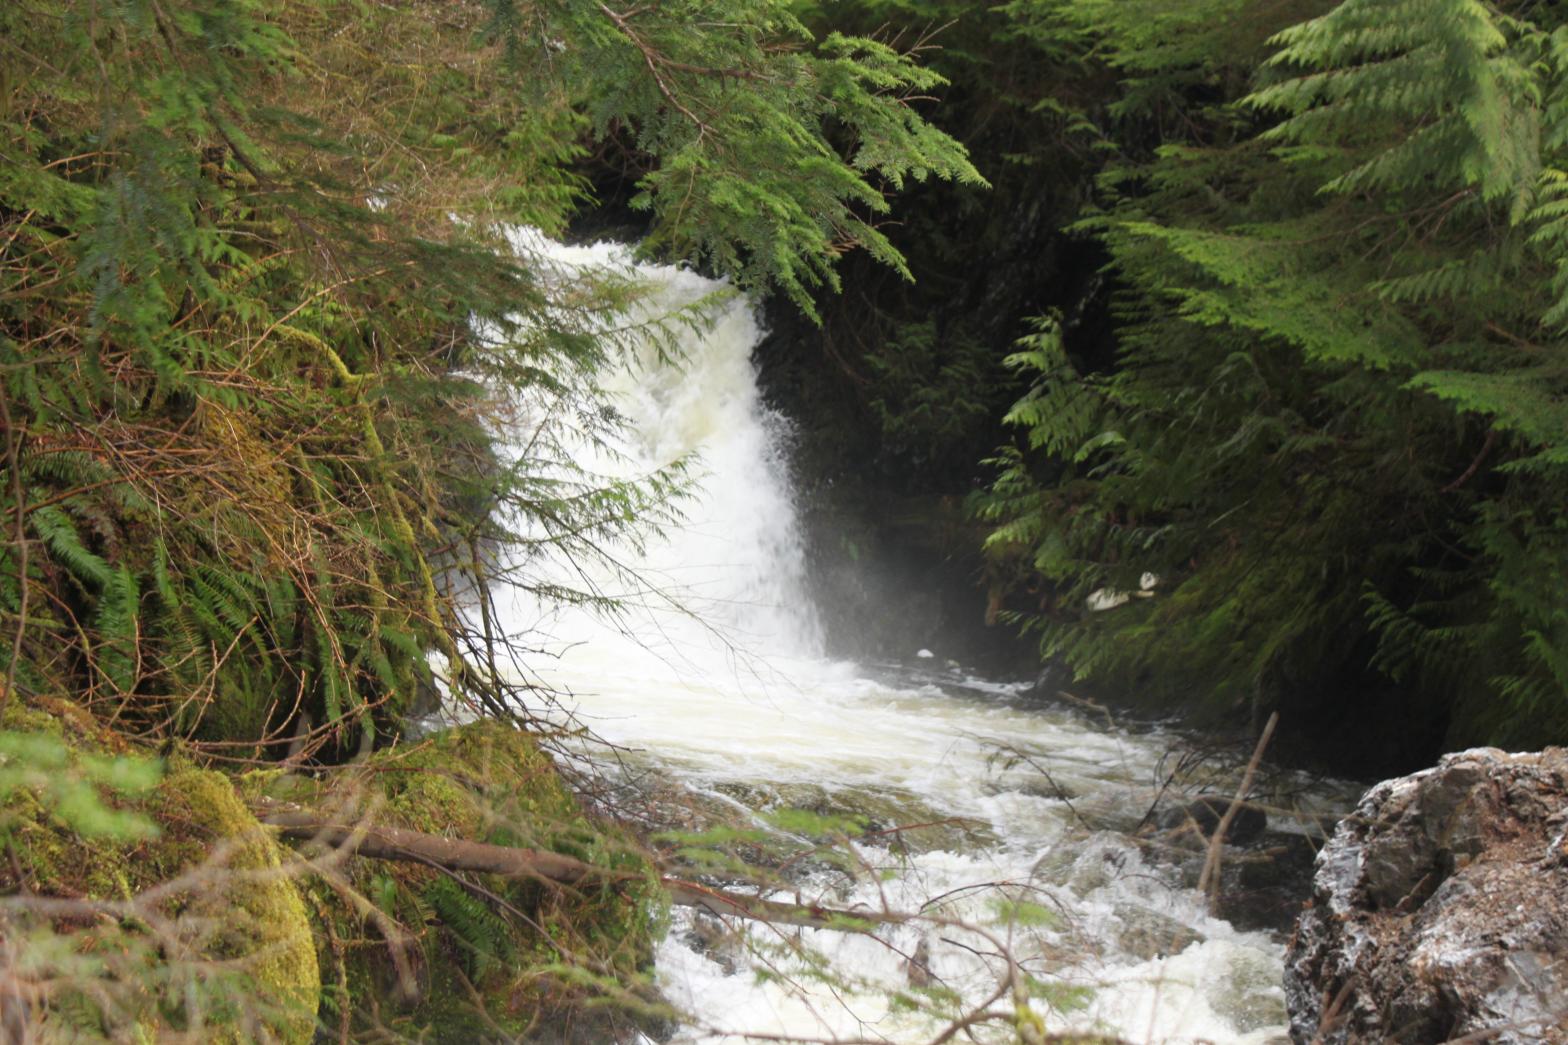 The 18' biggest drop of Upper Hancock Creek Falls